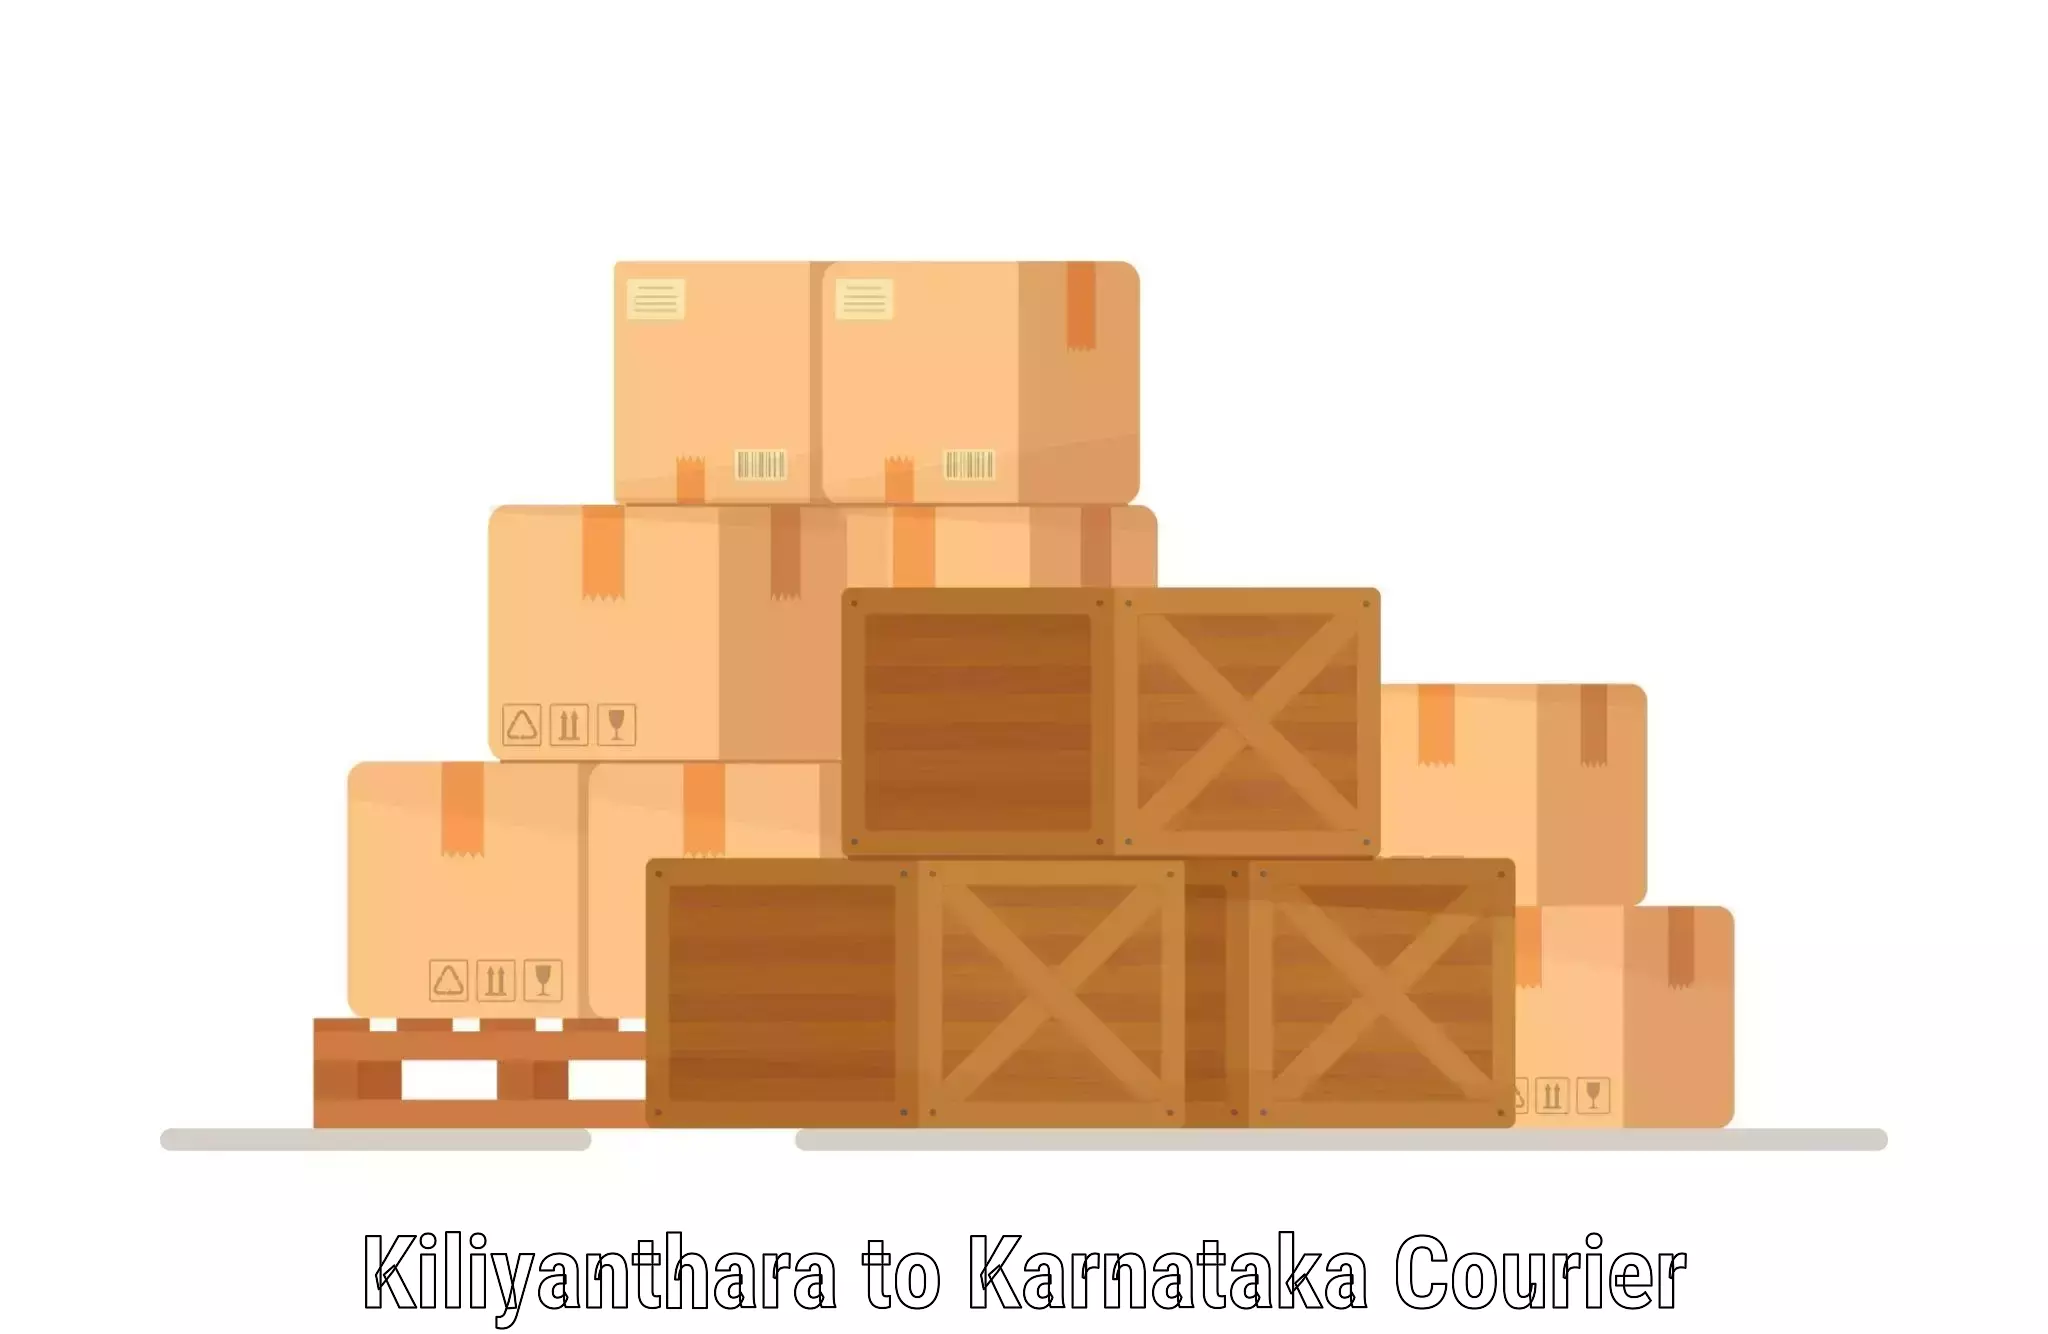 Customizable shipping options Kiliyanthara to Navalgund